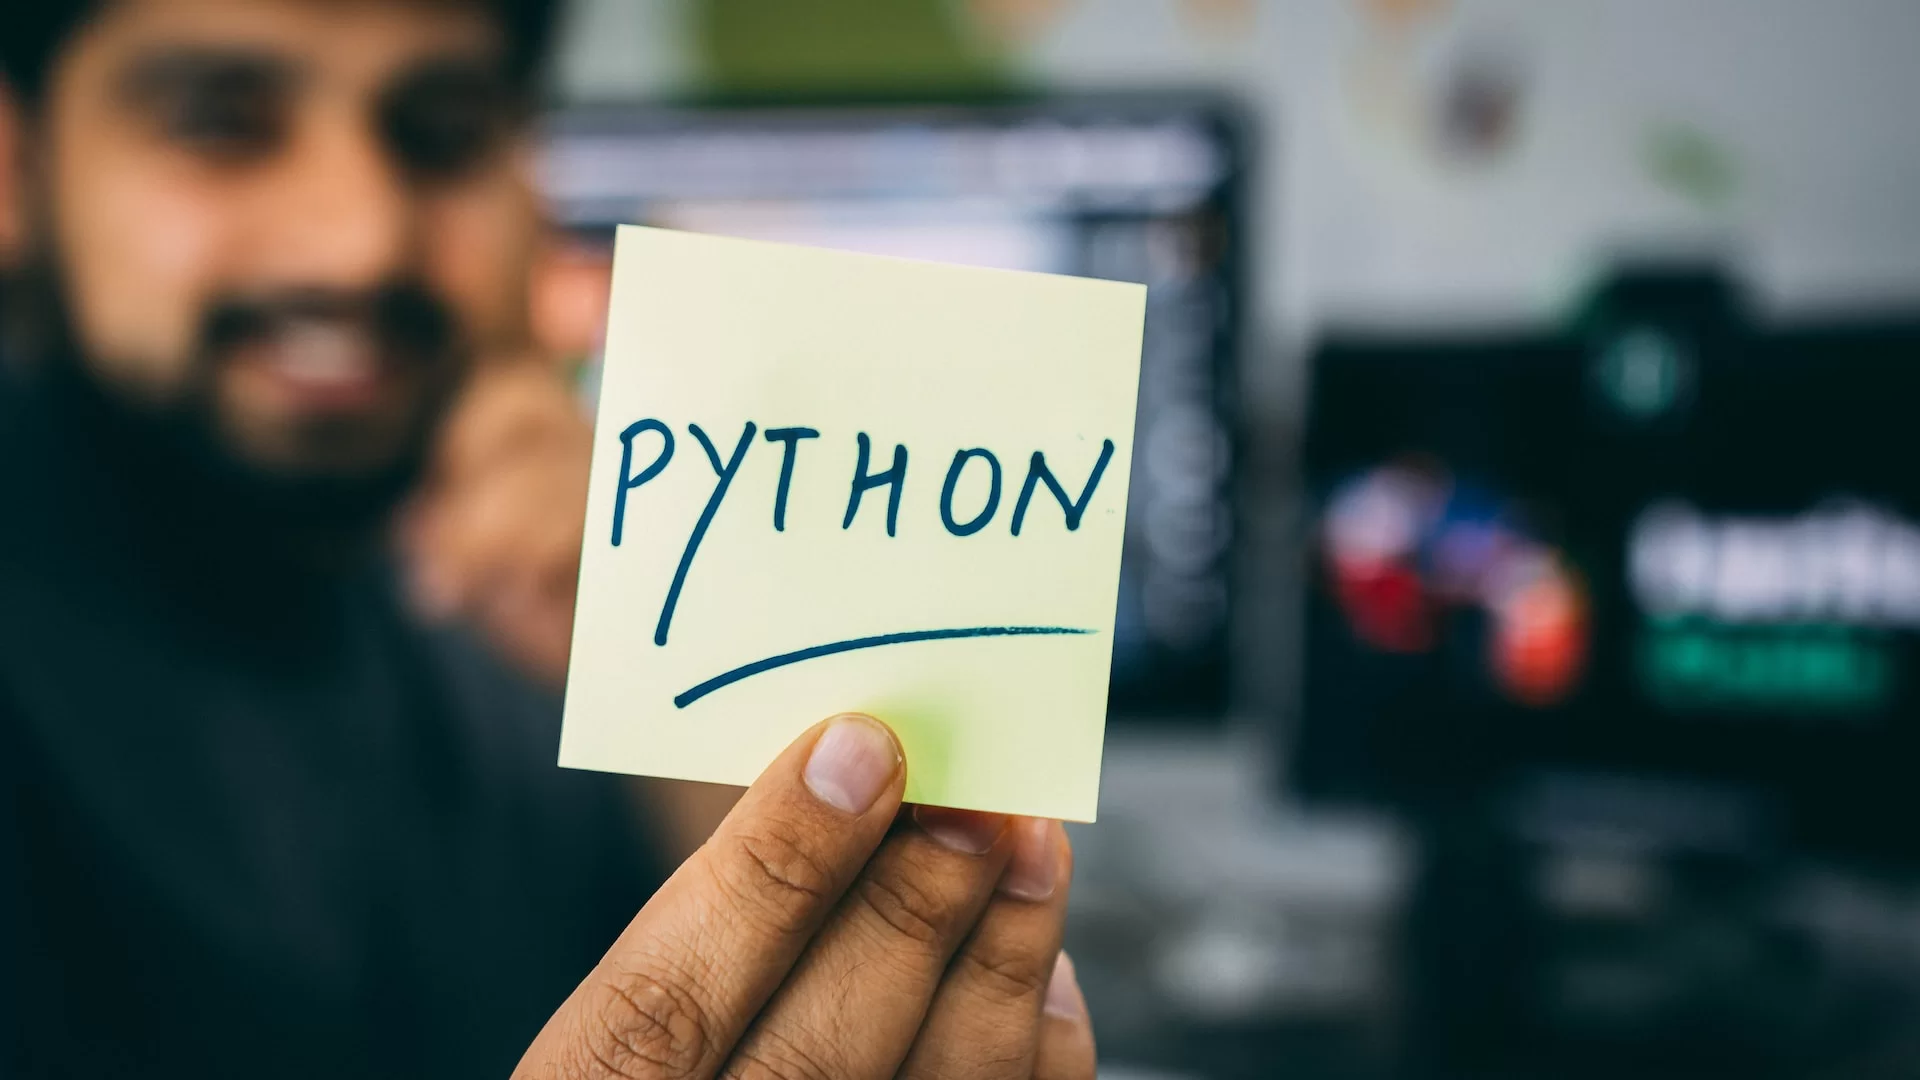 a imagem mostra um homem ao fundo tendo seu rosto desfocado, segurando um bilhete em que está escrito ‘python’ em destaque. A imagem faz referência a biblioteca Matplotlib da linguagem de programação Python.